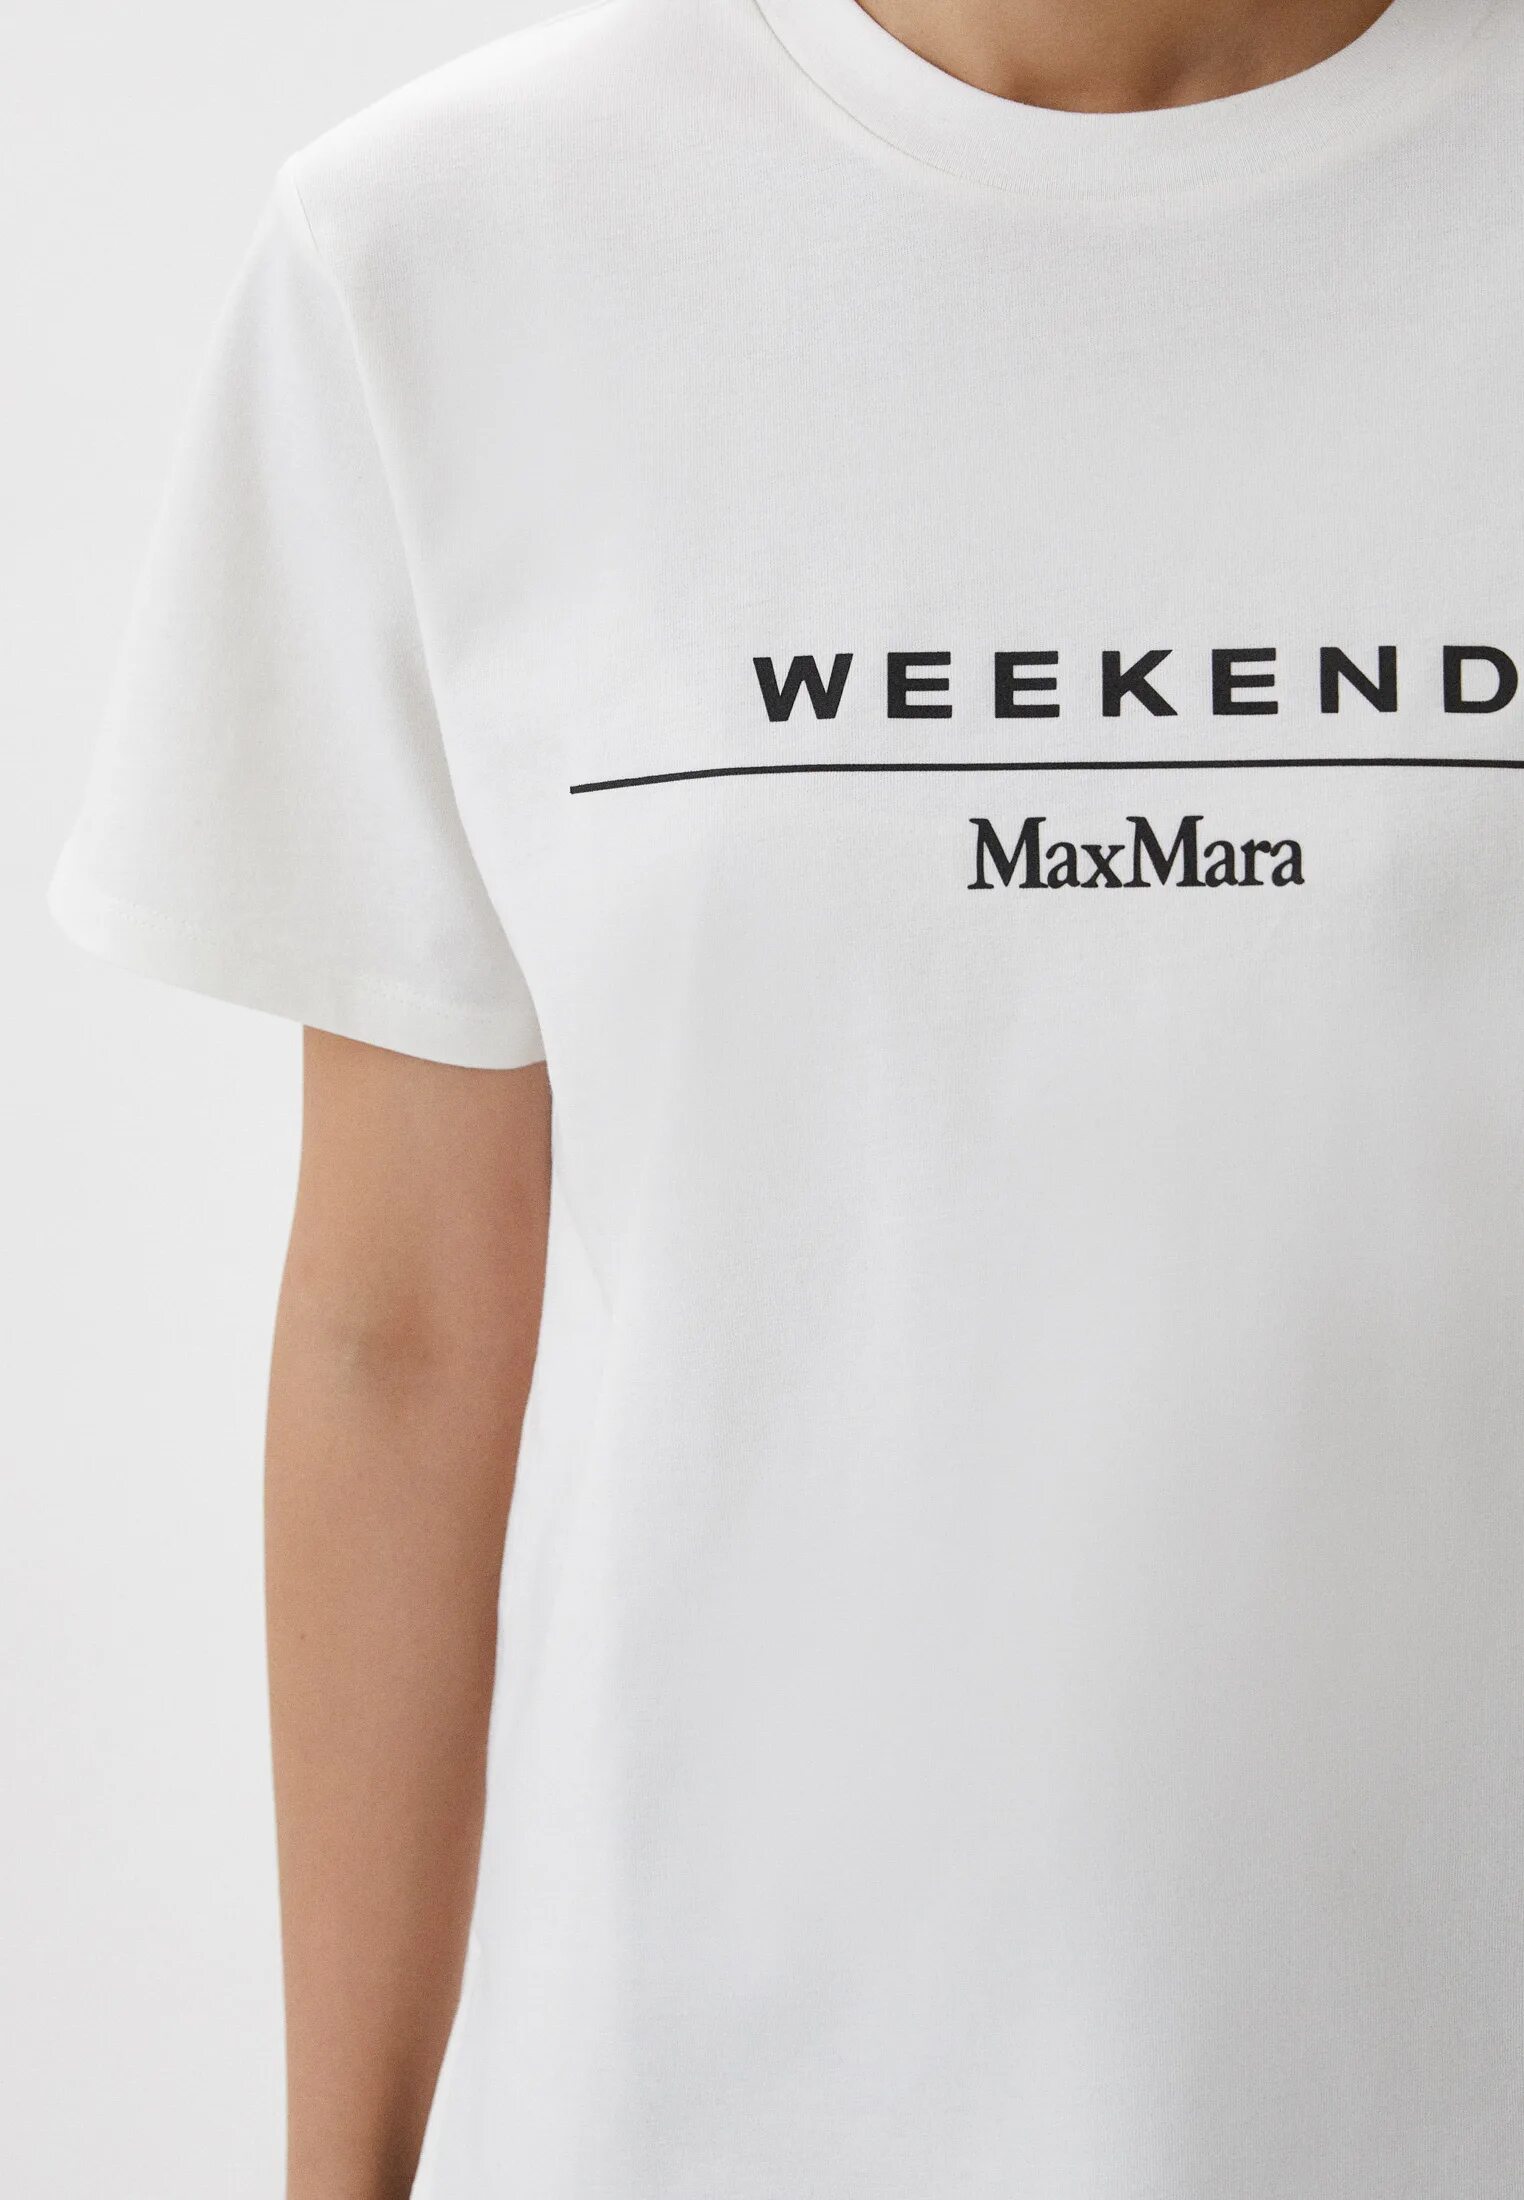 Купить уикенд макс. Футболка Max Mara weekend. Белая футболка Max Mara weekend. Max Mara sante футболка. Max Mara weekend футболка Bolivar.